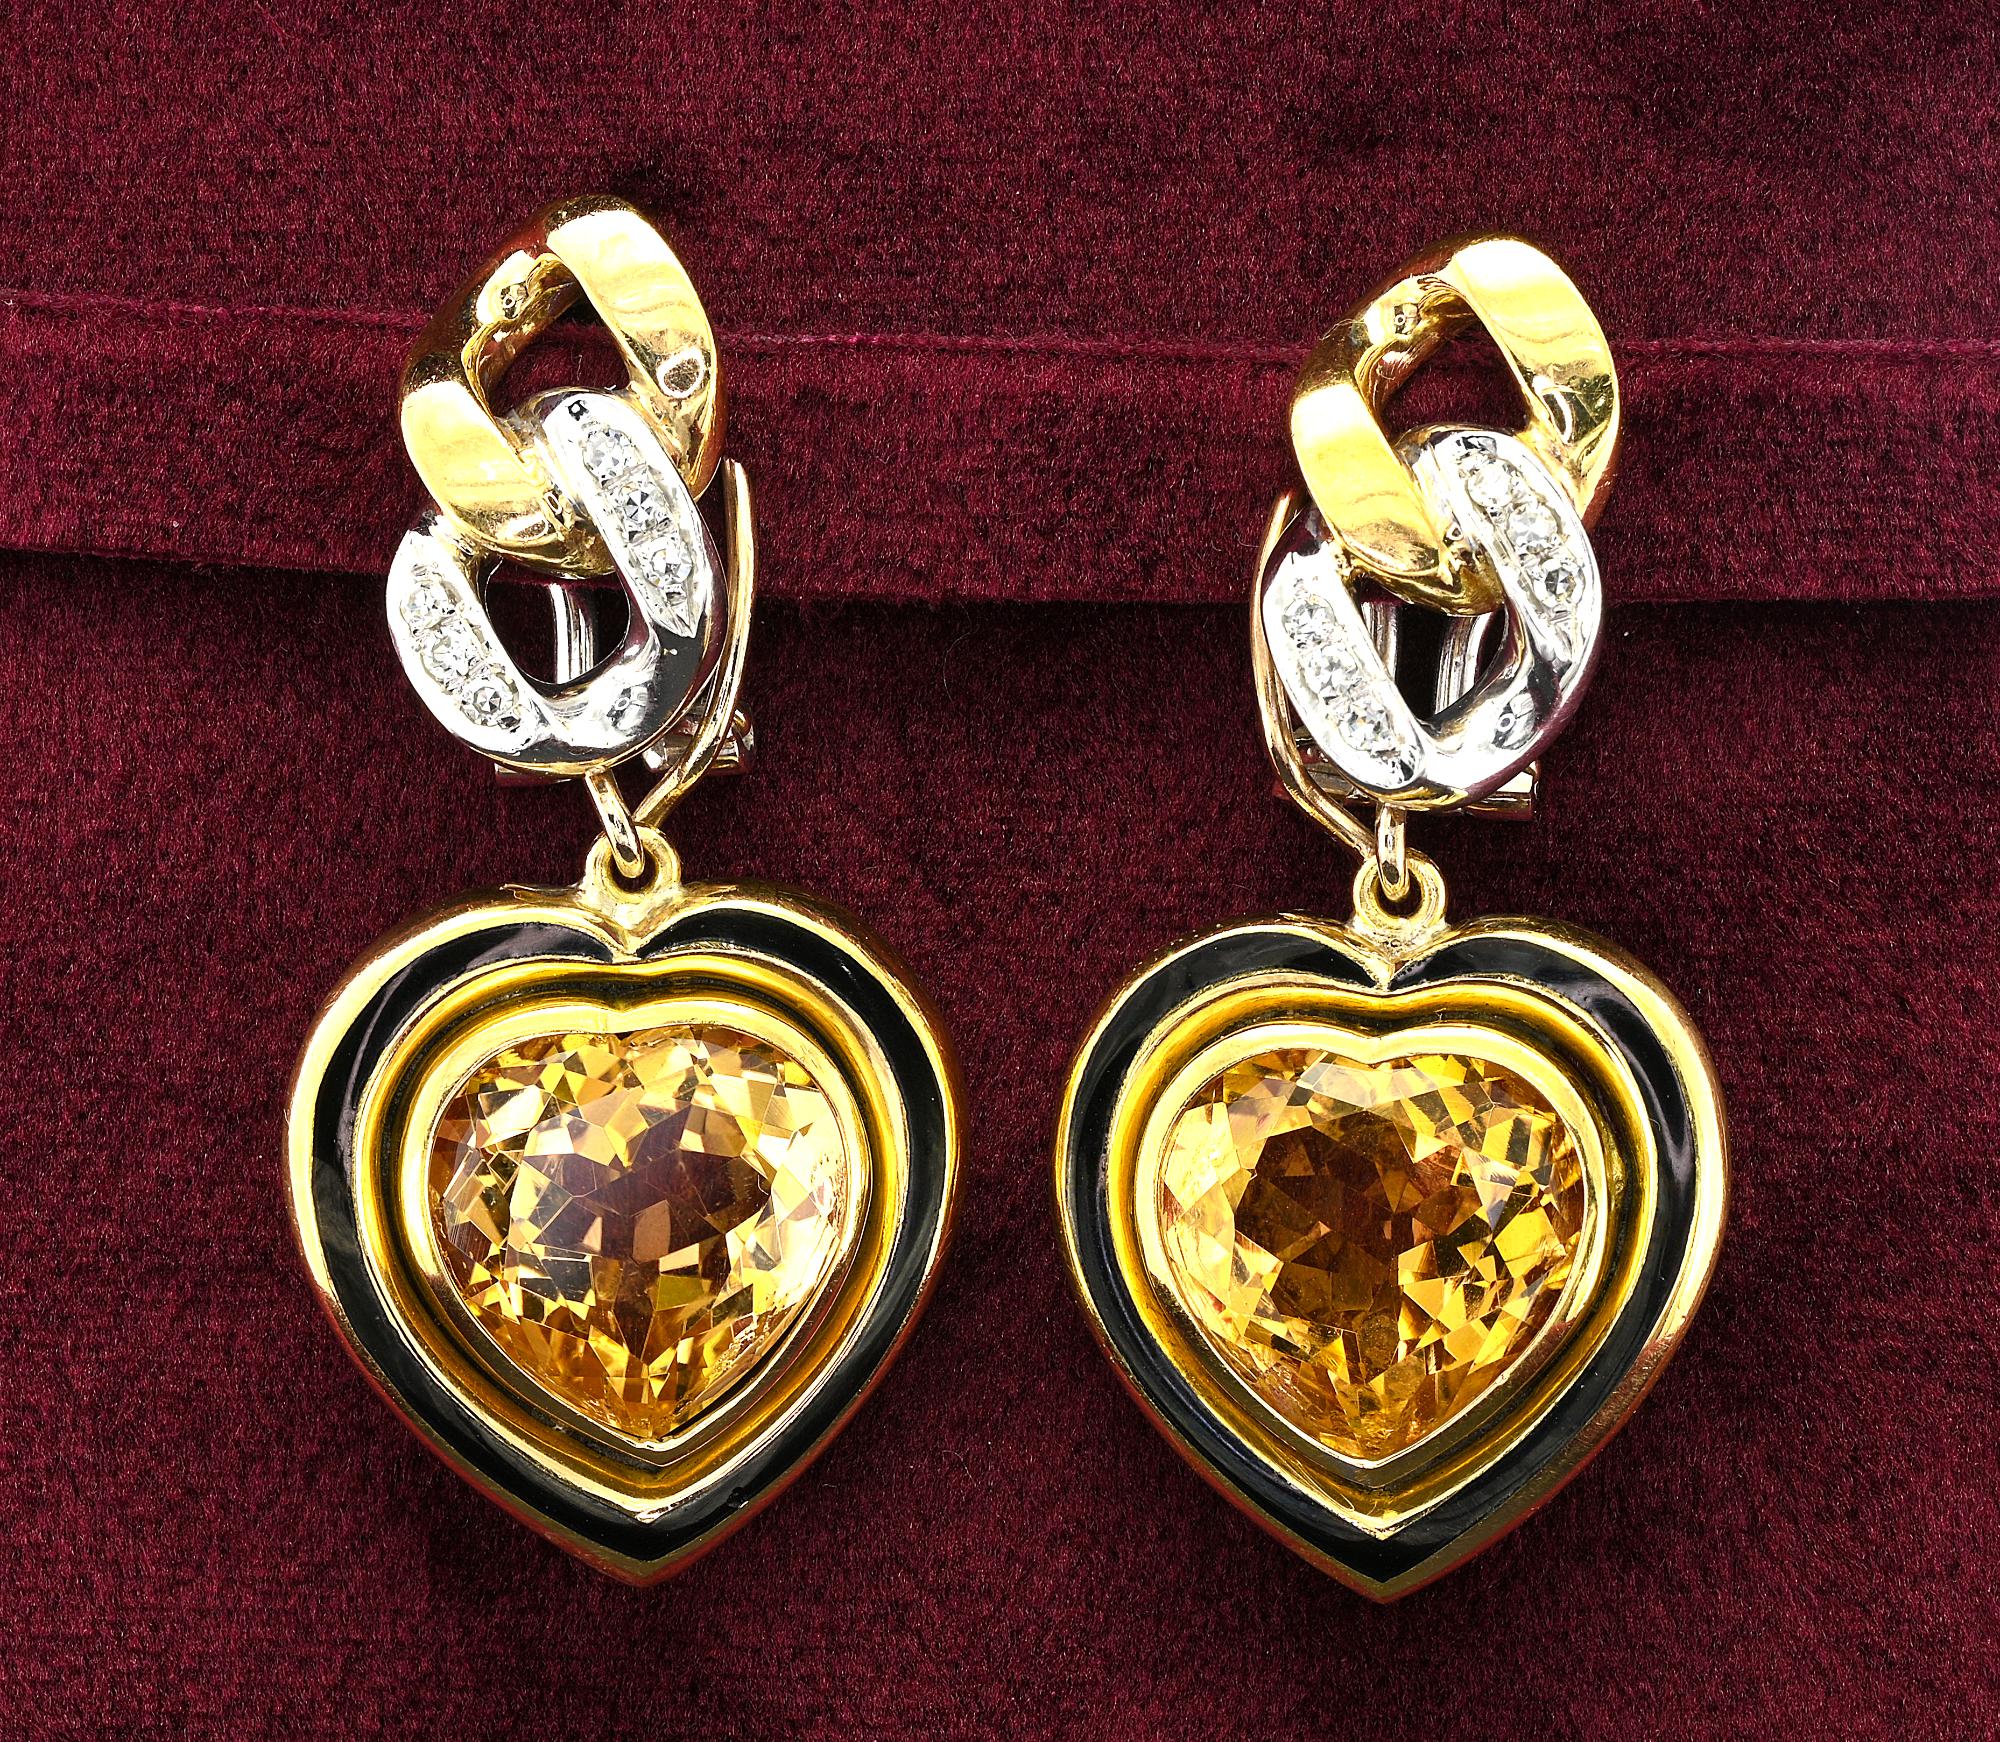 Diese schönen Nachlass Ohrringe sind 1975 circa, italienischer Herkunft, 18 KT Gold gemacht
Sie wurden mit einer auffälligen, separat aufgeführten Halskette kombiniert.
Ohrringe haben ein dynamisches schickes Design, mit einer Panzerkette Top-Motiv